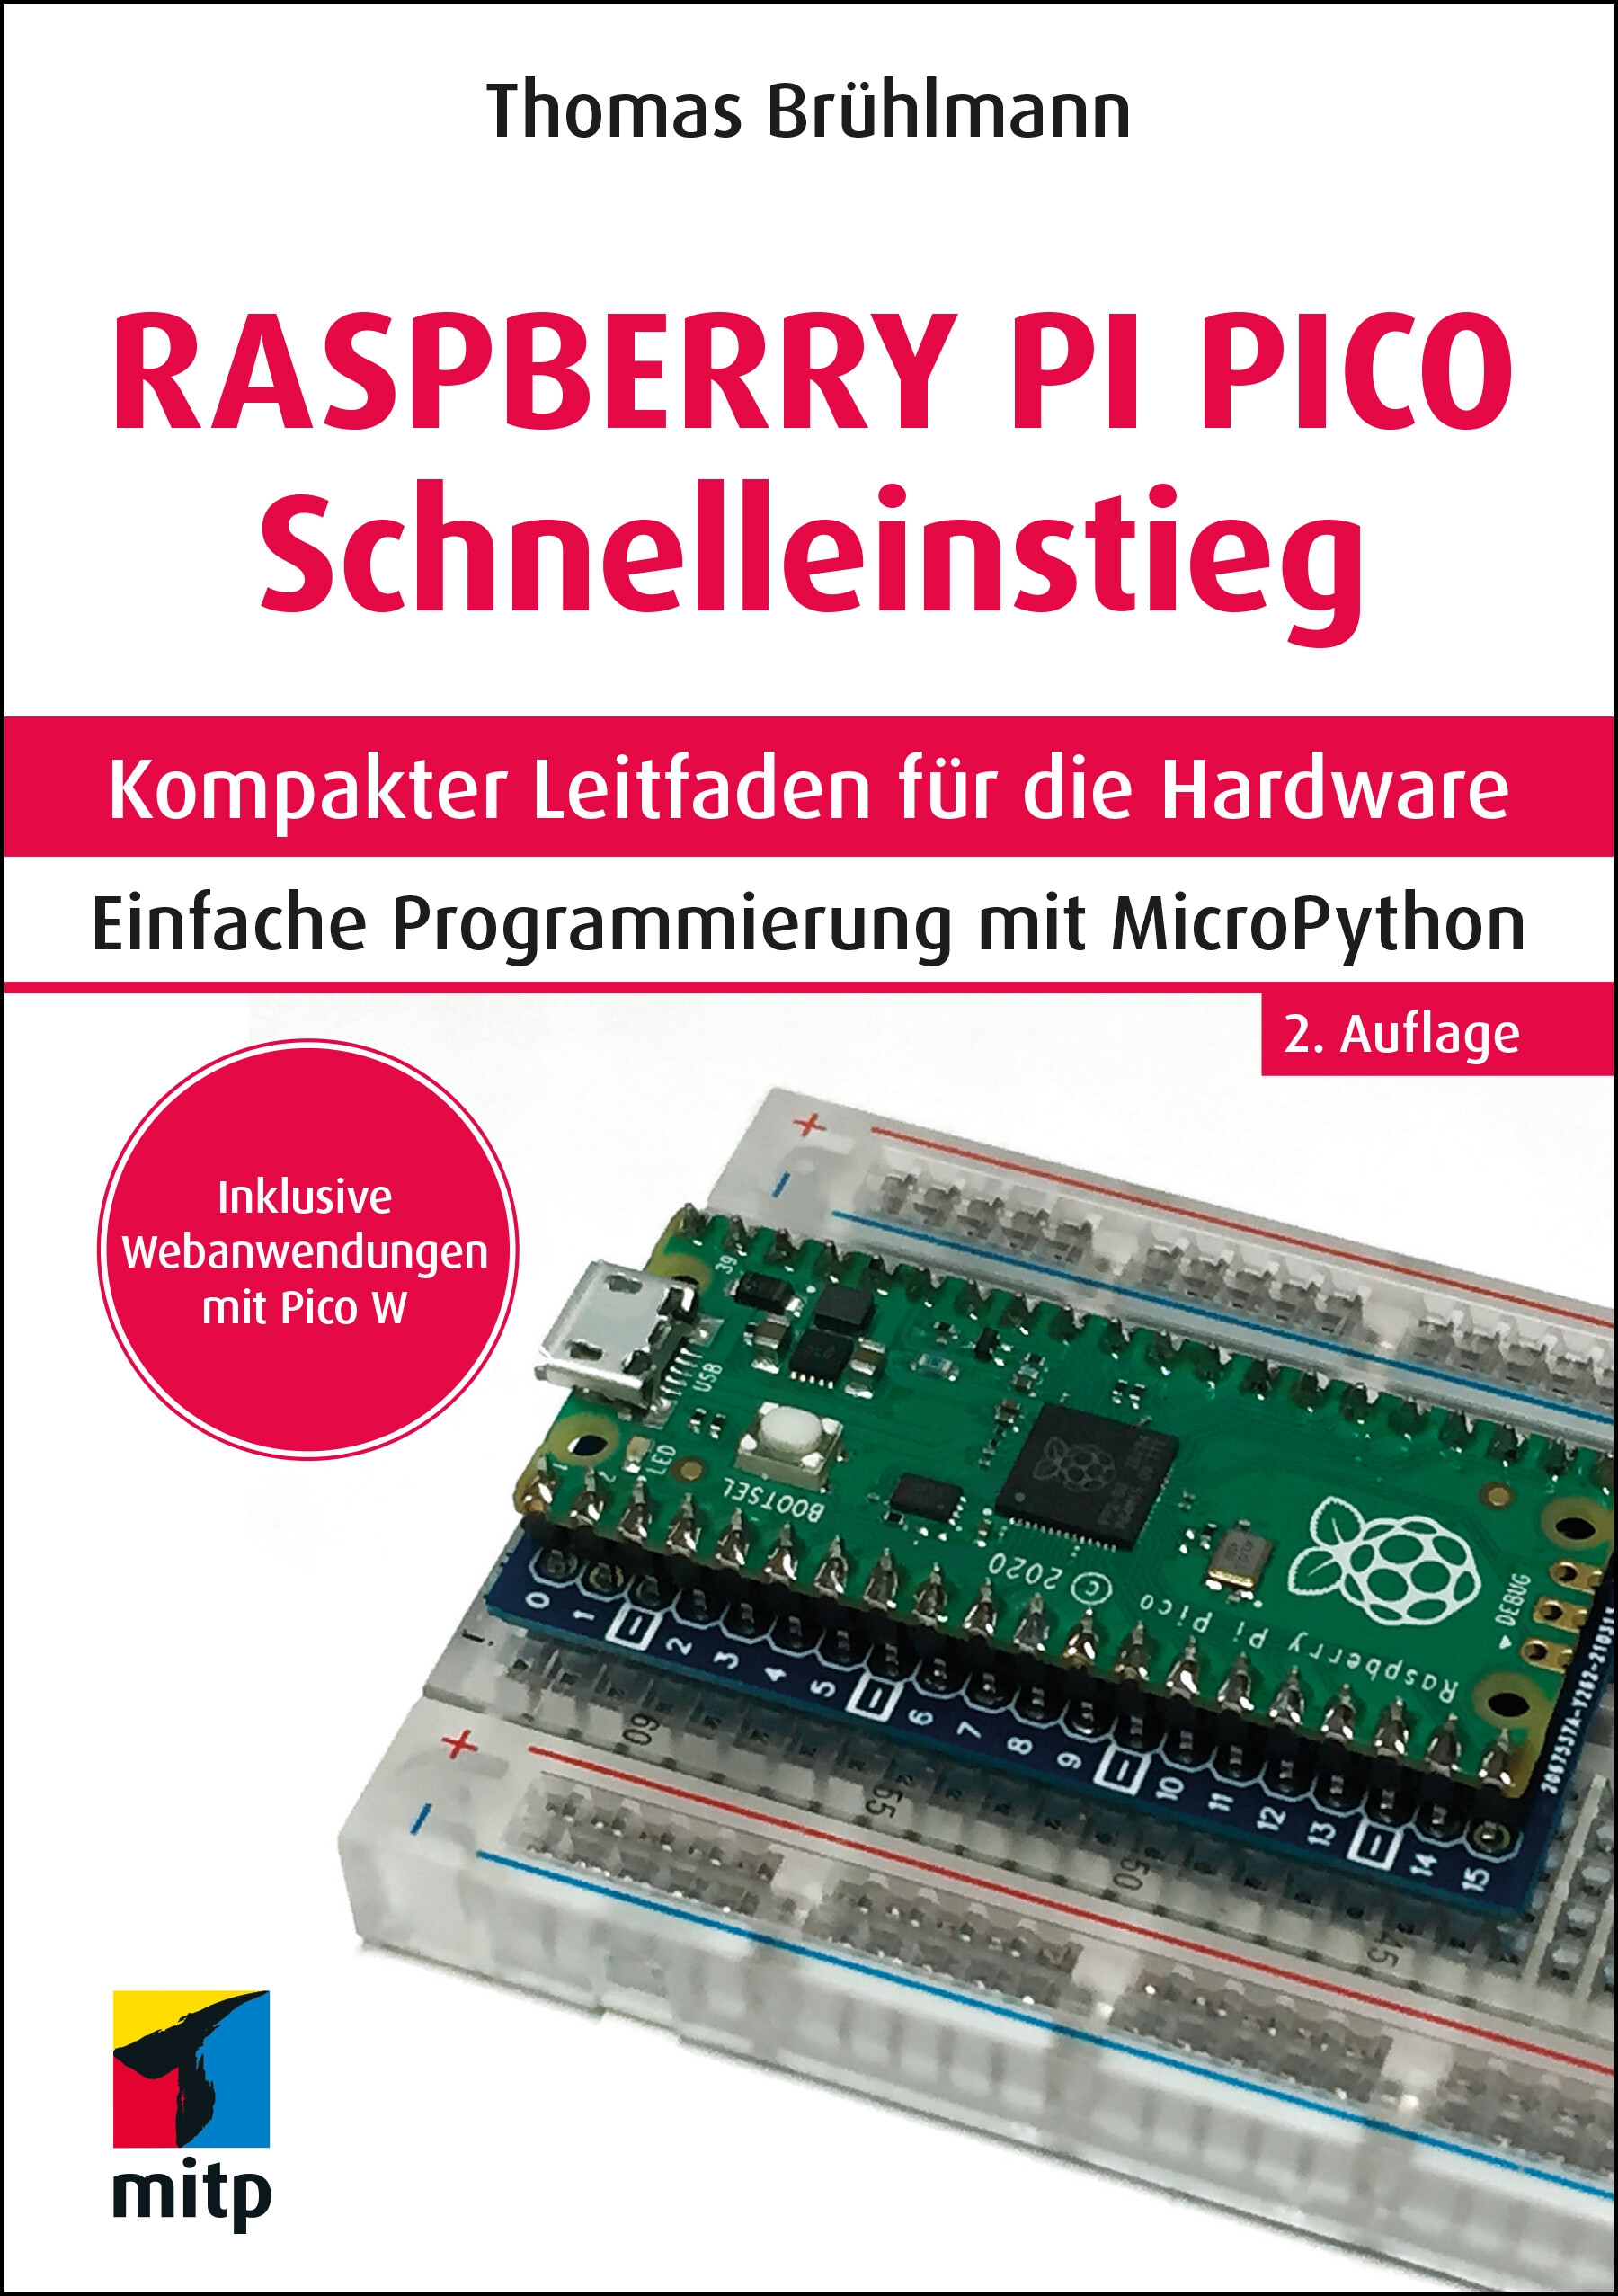 Raspberry Pi Pico-Set mit Schnelleinstieg-Buch